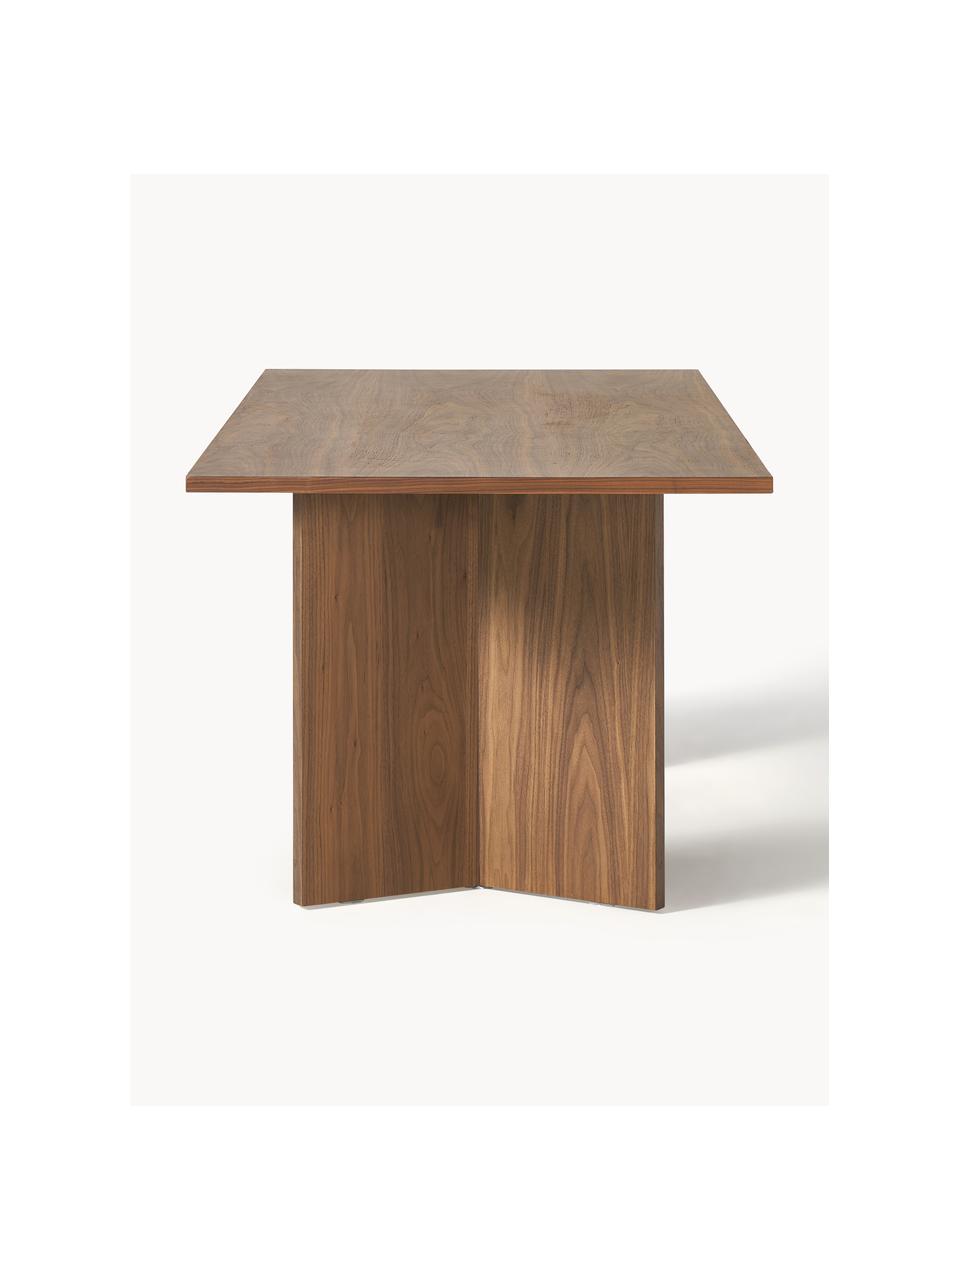 Dřevěný jídelní stůl Toni, 200 x 90 cm, Dřevovláknitá deska střední hustoty (MDF) s ořechovou dýhou, lakovaná

Tento produkt je vyroben z udržitelných zdrojů dřeva s certifikací FSC®., Ořechové dřevo, Š 200 cm, H 90 cm